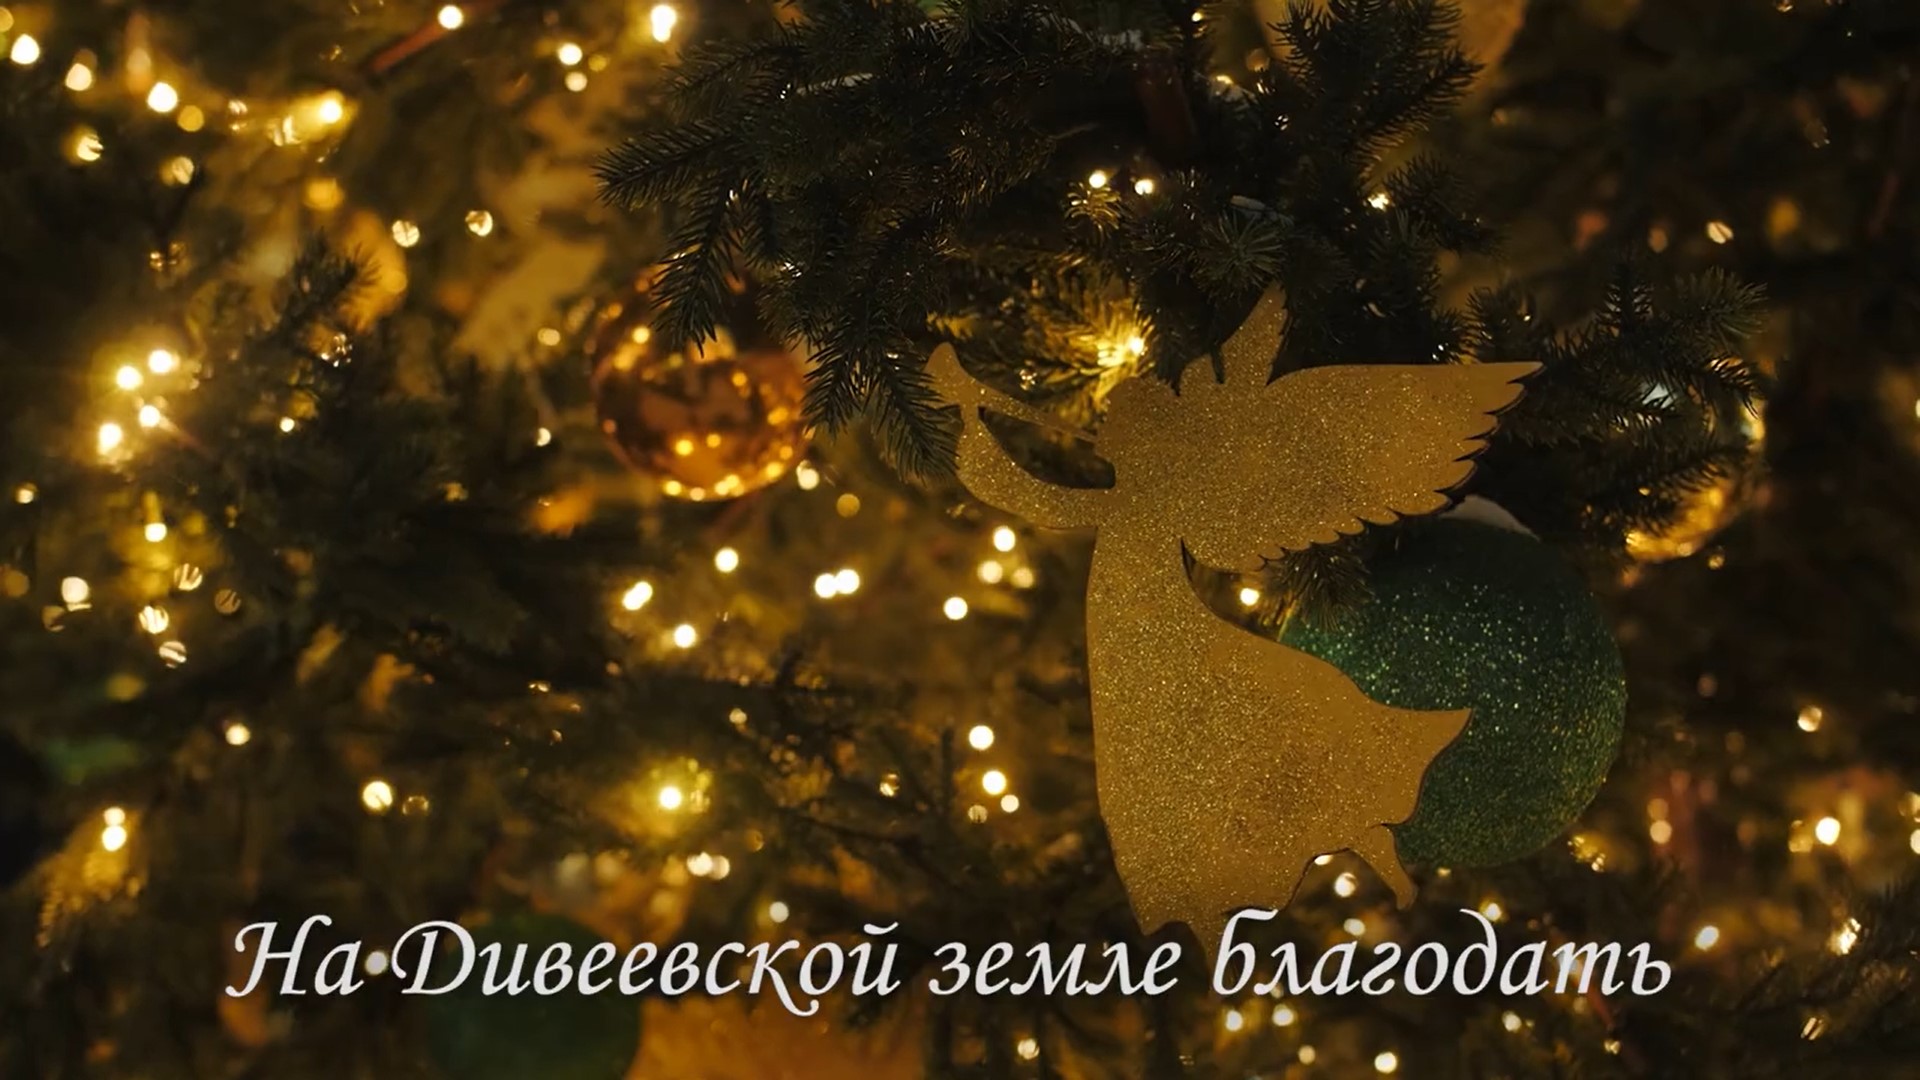 Архиерейский хор Нижегородской епархии выпустил клип на песню «Дивеево»